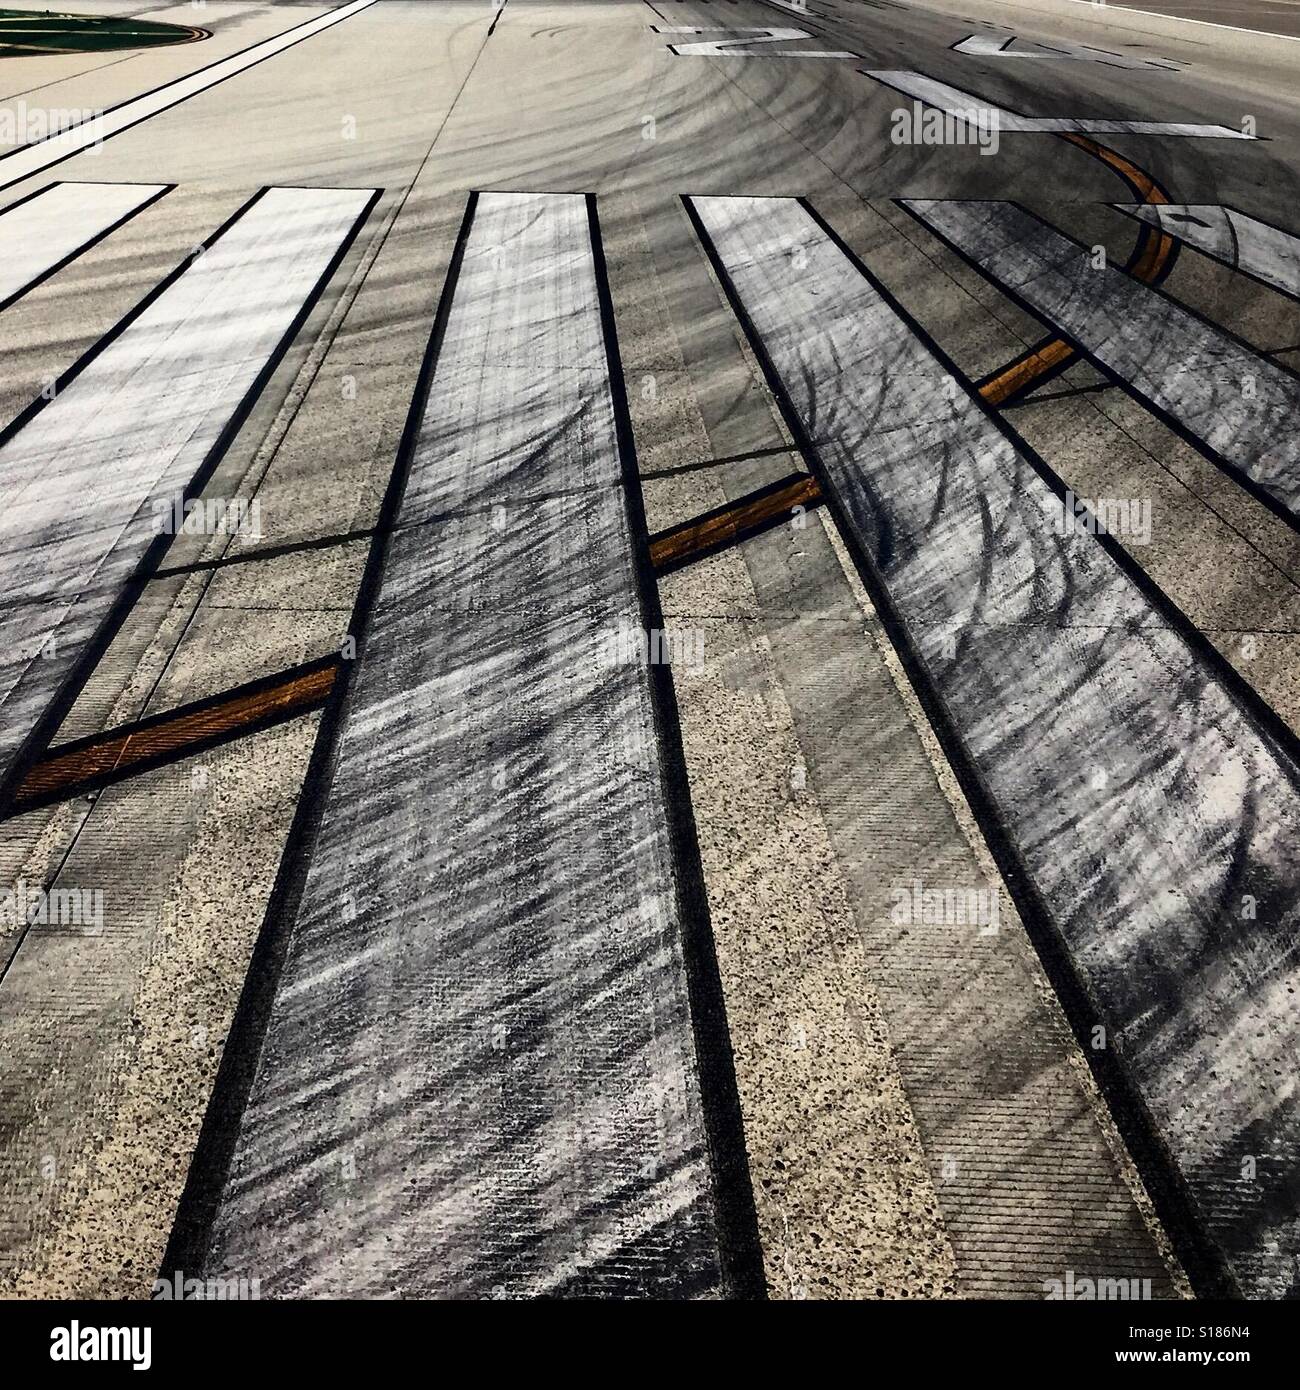 Airport runway skid marks Stock Photo